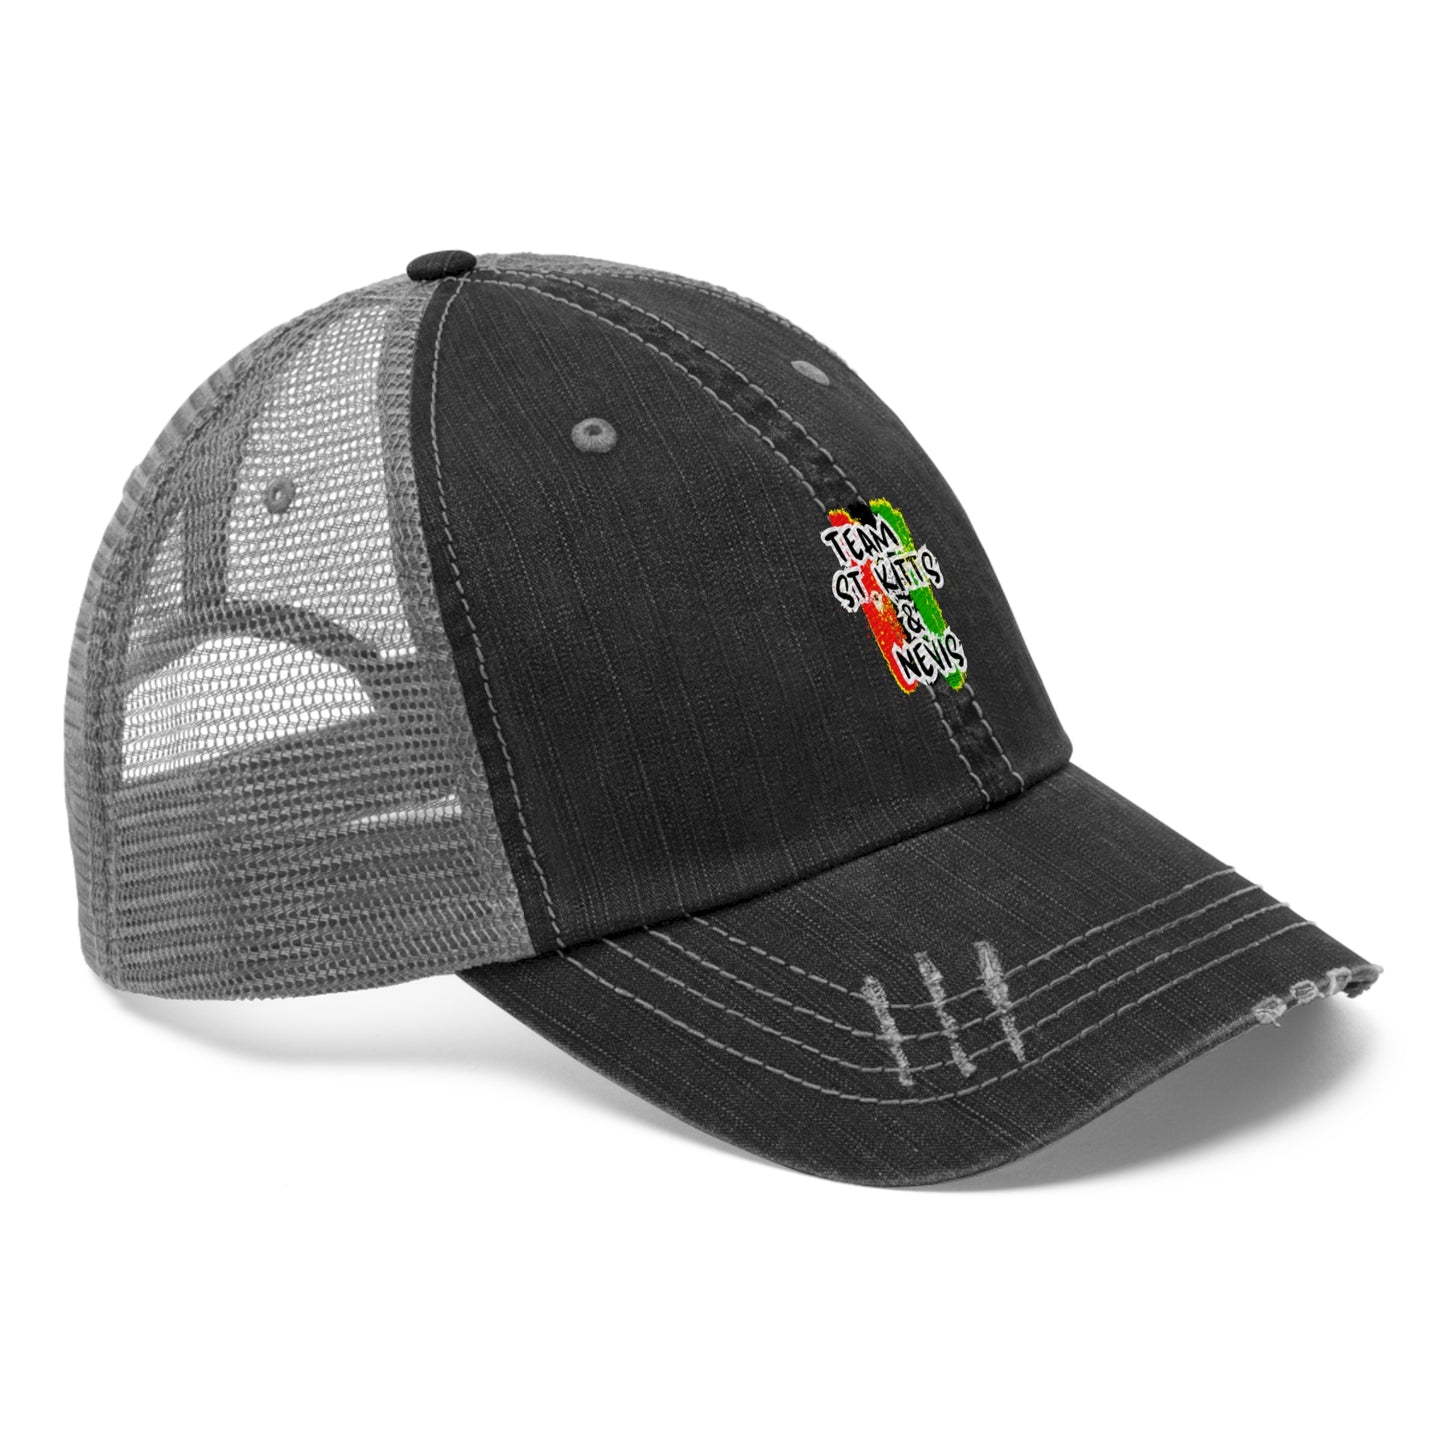 Team St.Kitts & Nevis Trucker Hat